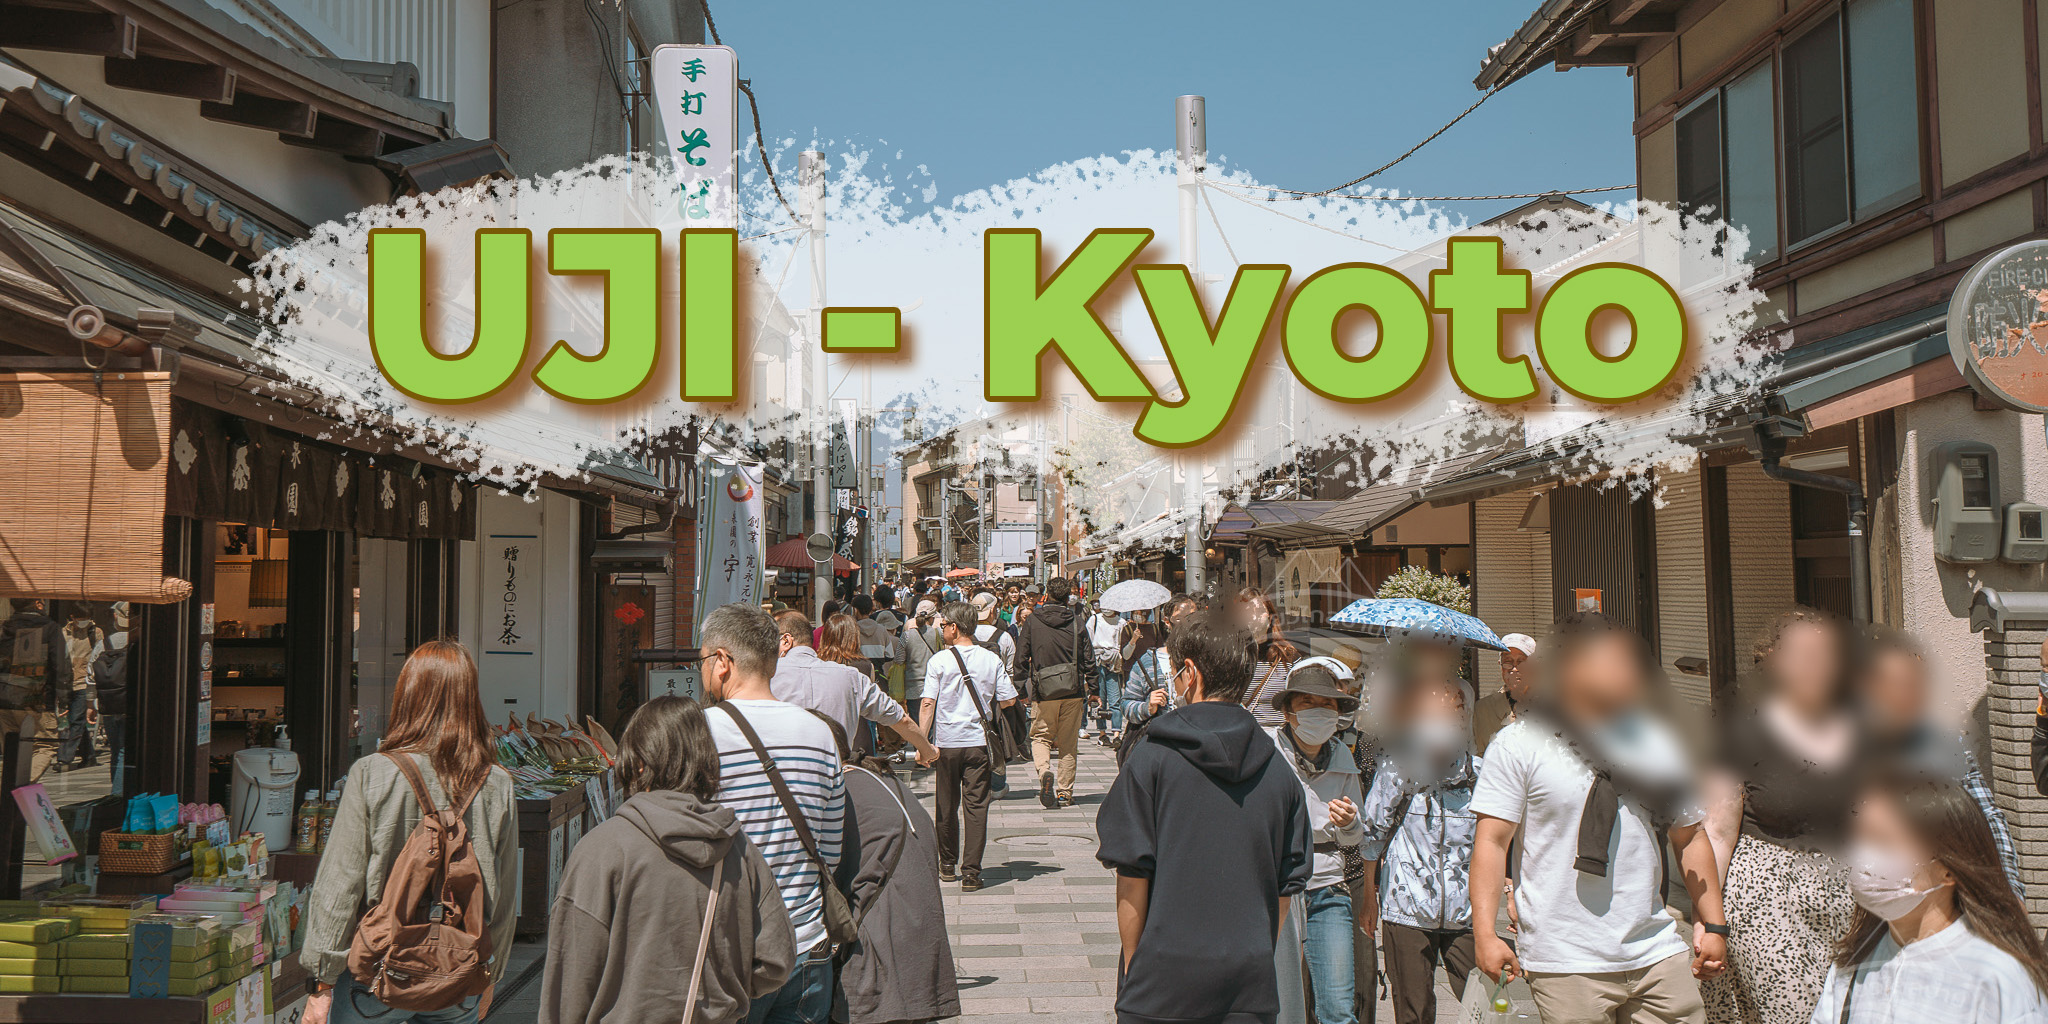 uji kyoto เมืองชาเขียว